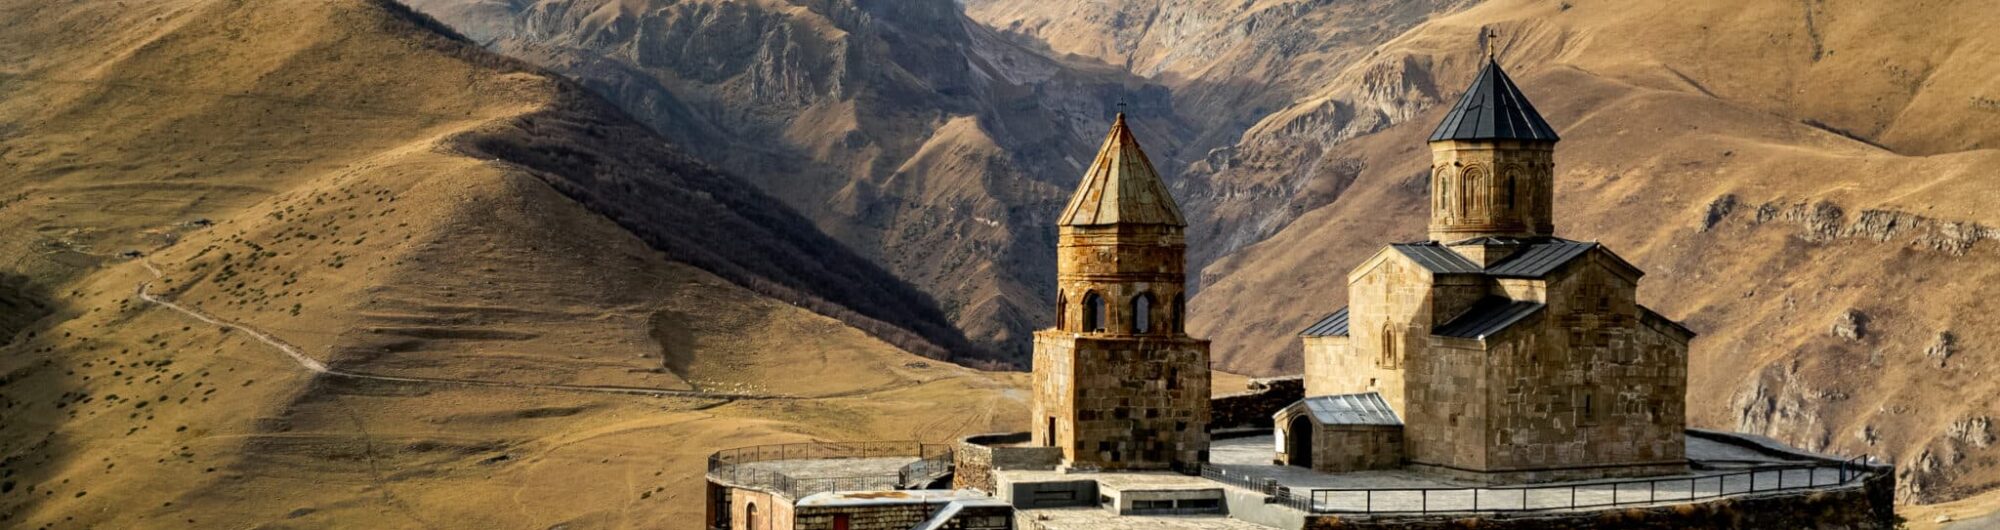 Pielgrzymka St.Joseph Travel/ Rek Travel. Gruzja i Armenia